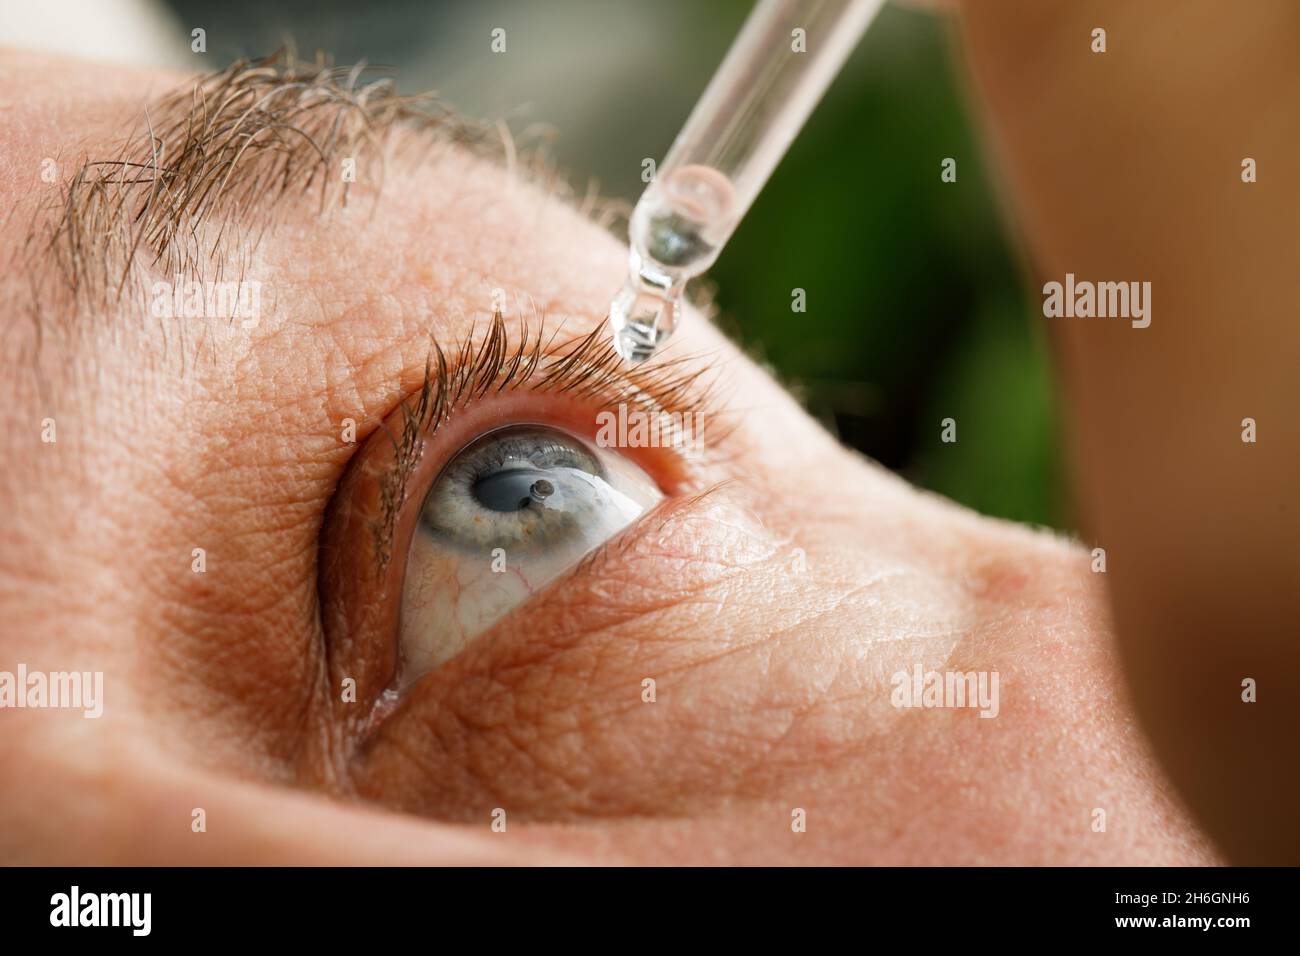 Ein Mann befeuchtet seine Augen, bevor er Kontaktlinsen einführt. Tropfen in den Augen durch Reizungen, Rötungen und Allergien. Stockfoto